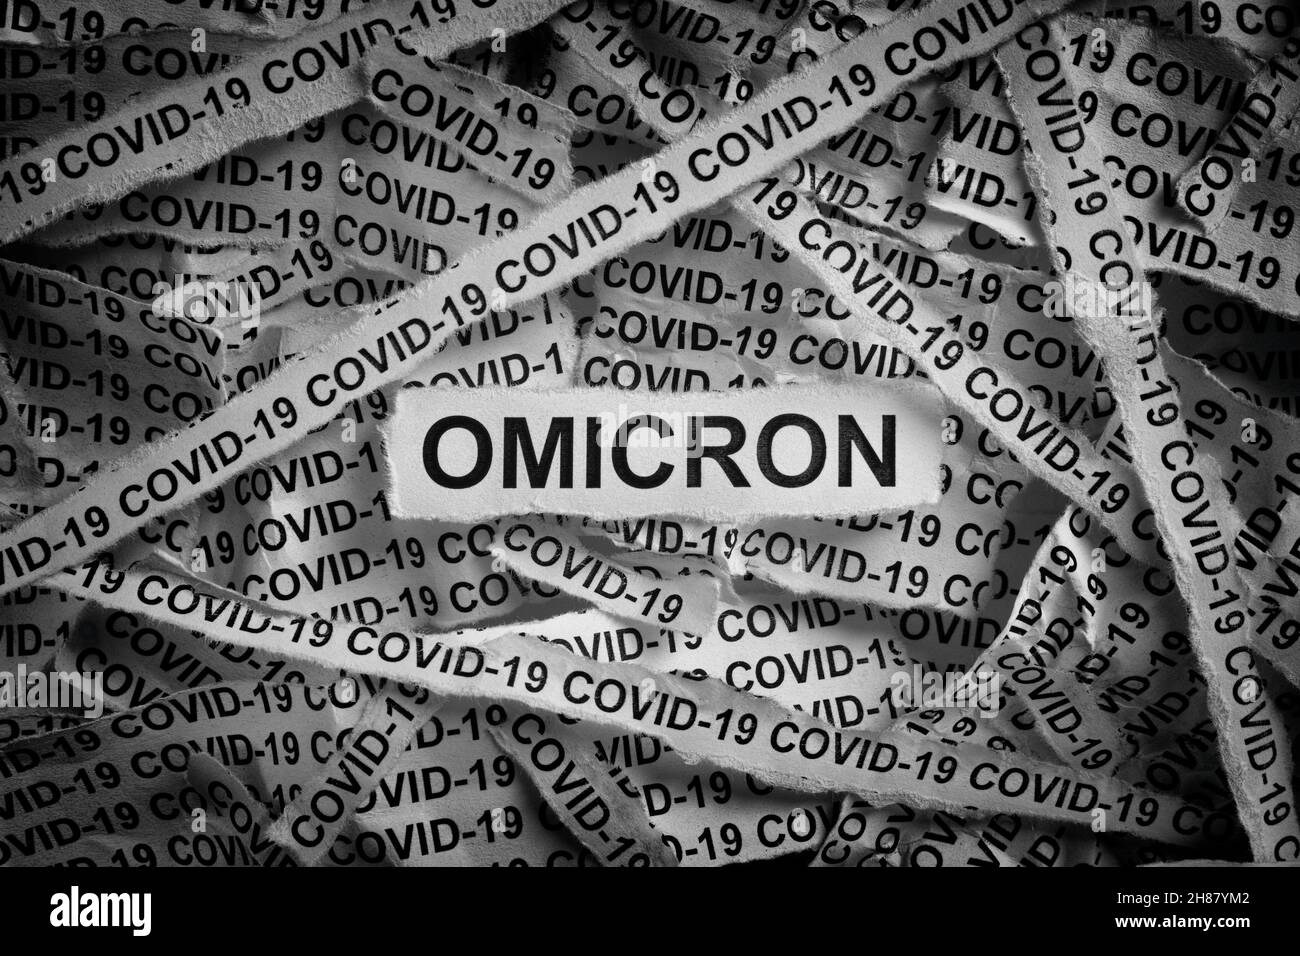 Die Streifen der Zeitung mit den Wörtern Omicron und Covid-19 haben auf ihnen getippt. Omicron-Variante von COVID-19. Schwarz und Weiß. Nahaufnahme. Stockfoto